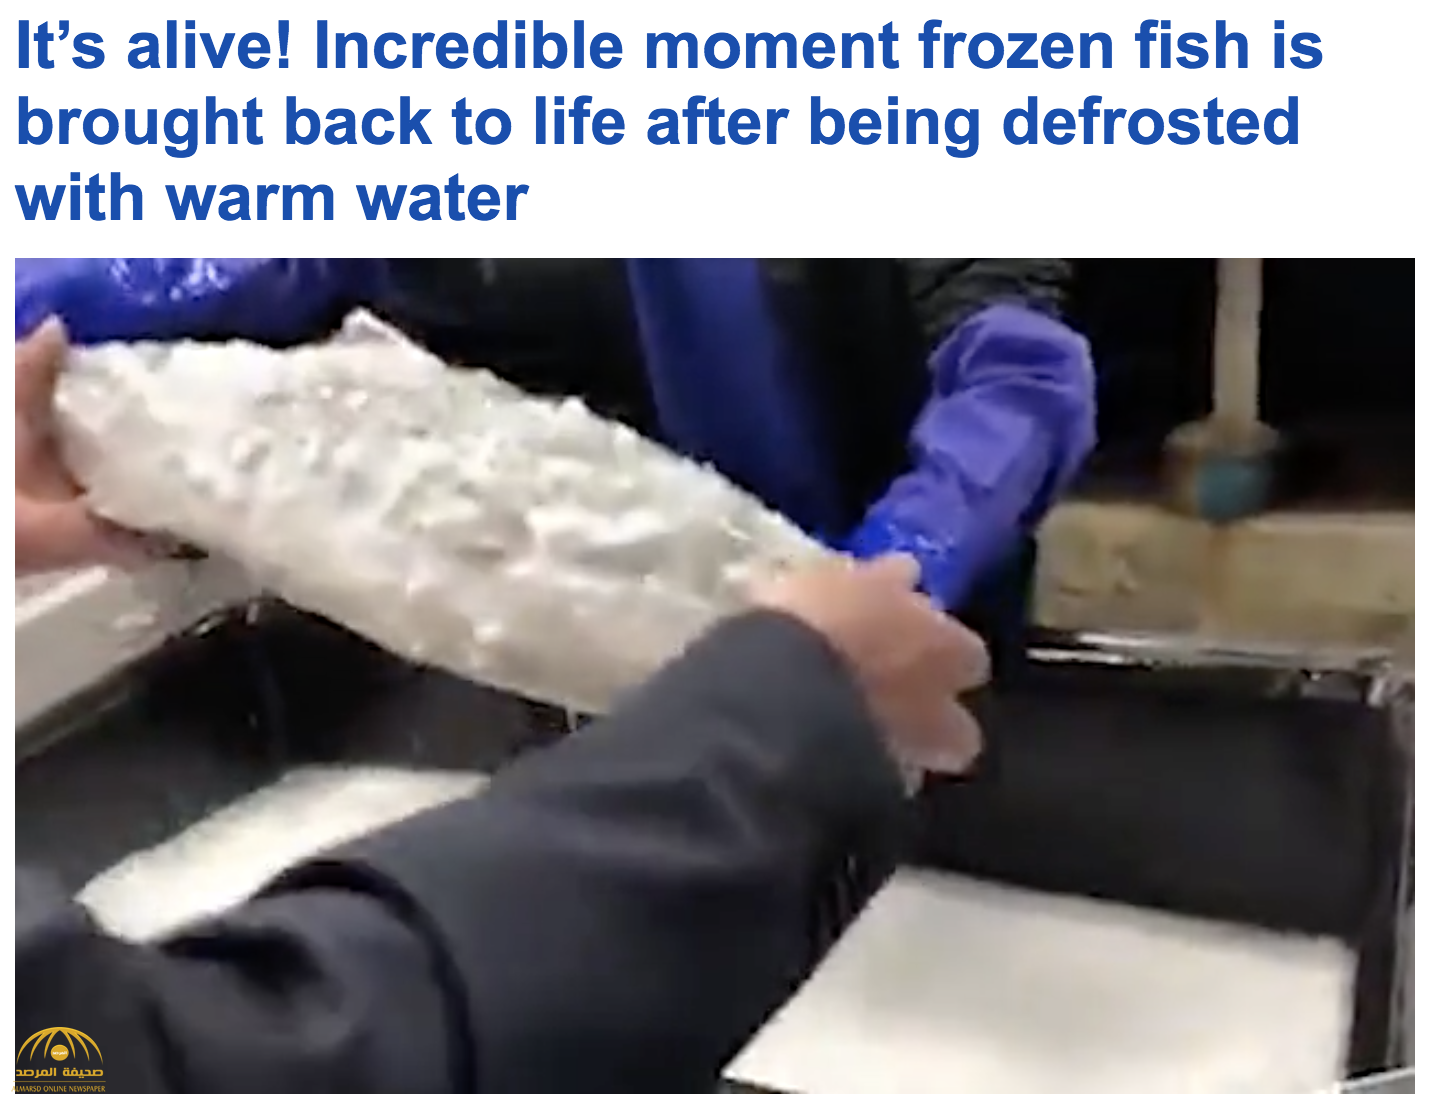 ترجمة حصرية .. شاهد : طريقة يابانية لتجميد الأسماك تسمح بعودته للحياة مرة أخرى - فيديو